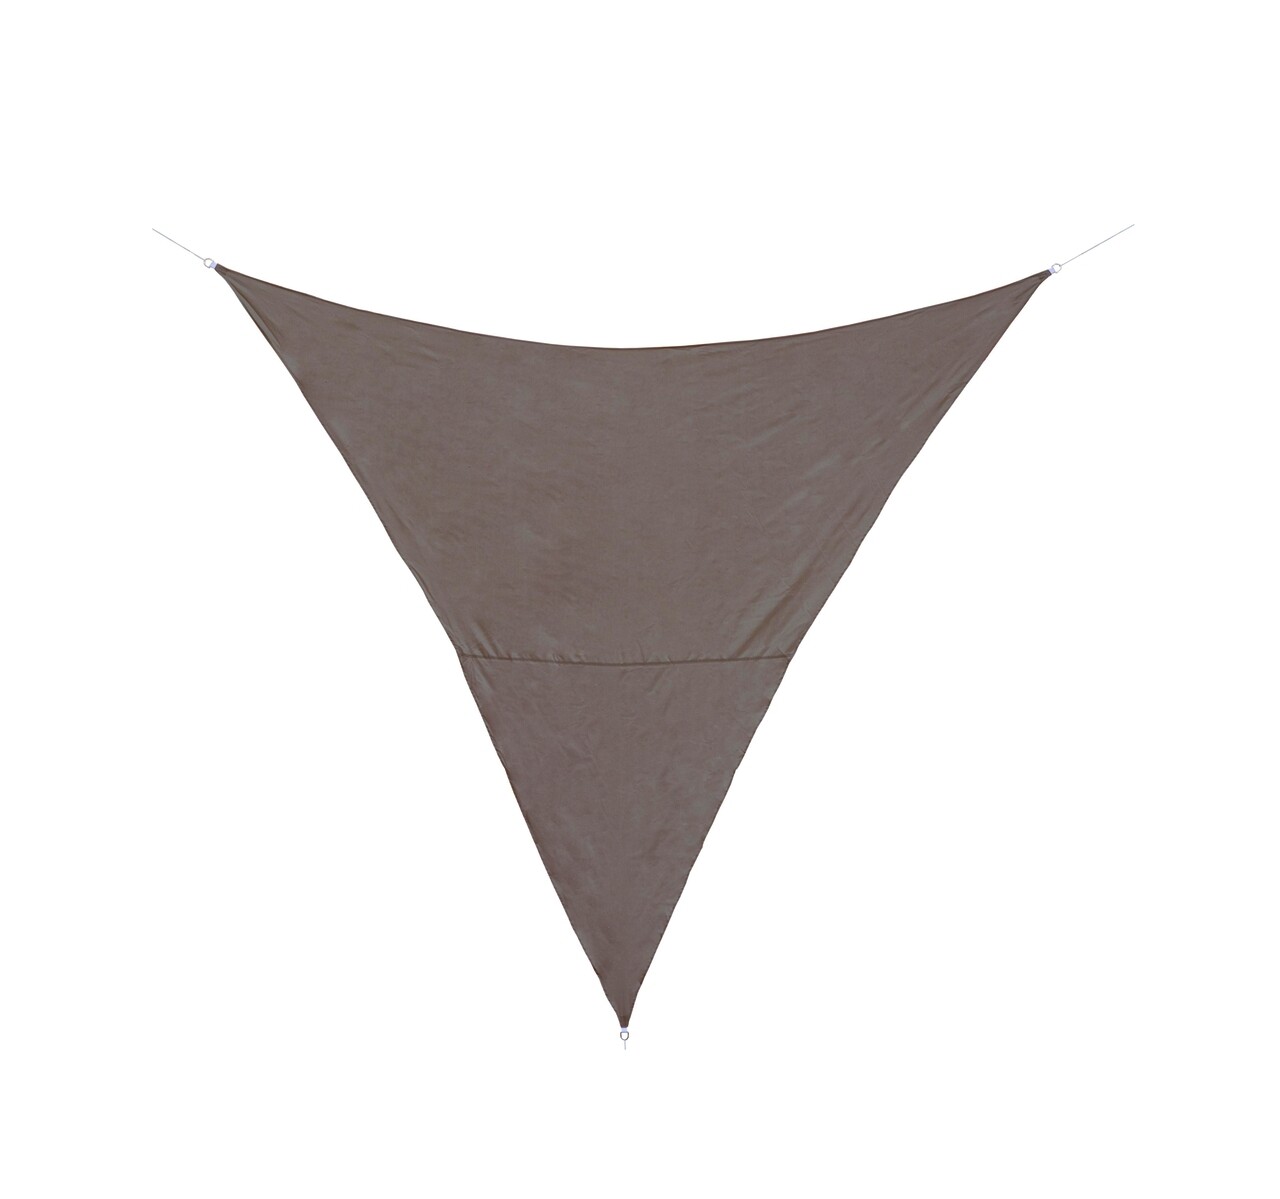 Sunshade Háromszögű napellenző, Bizzotto, 360 x 360 cm, poliészter, grézs